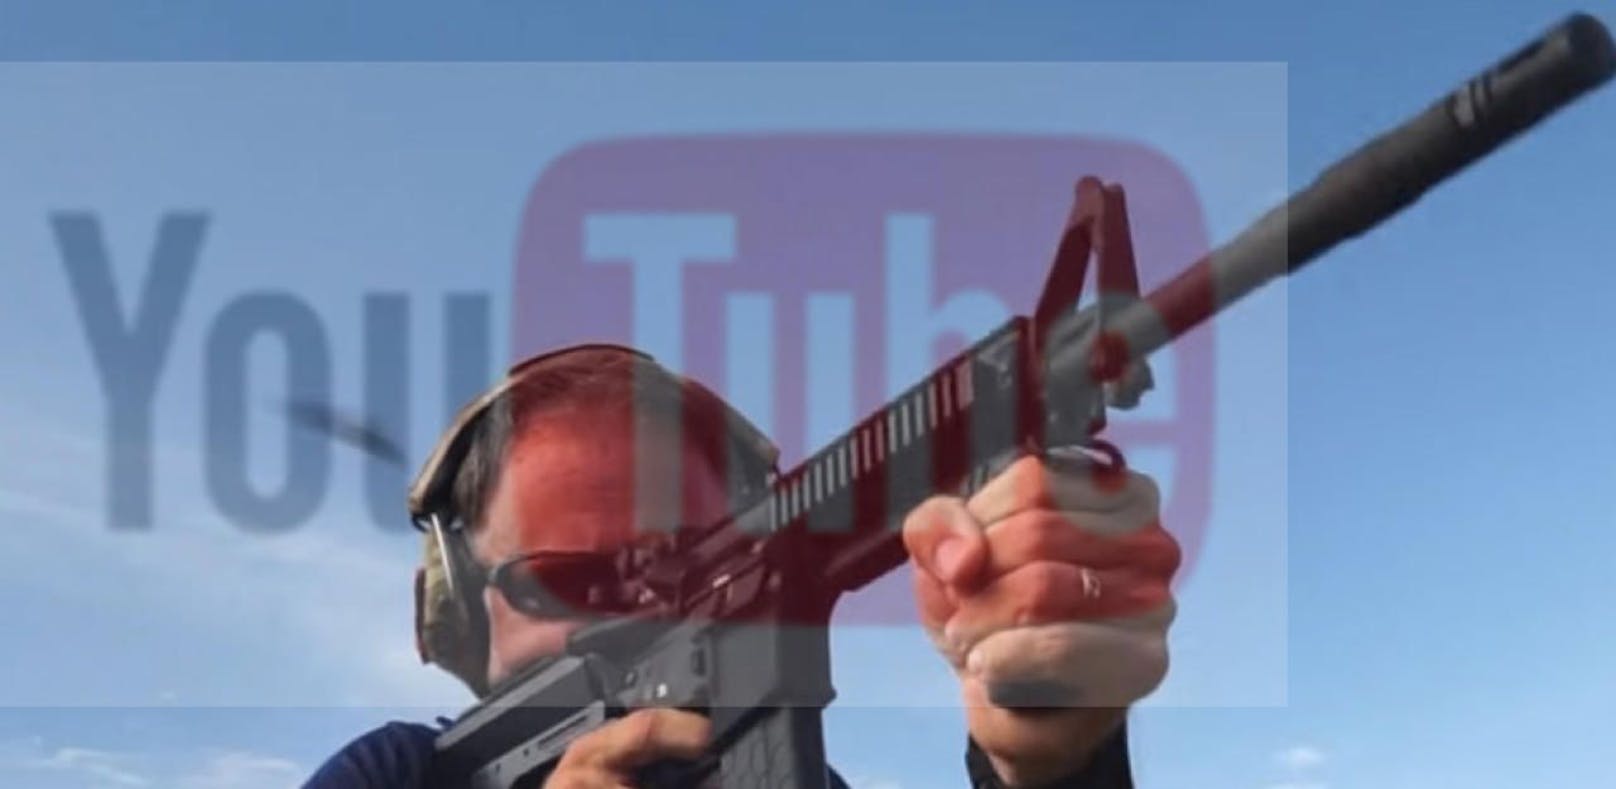 YouTube ändert seine Richtlinien zu Waffenvideos